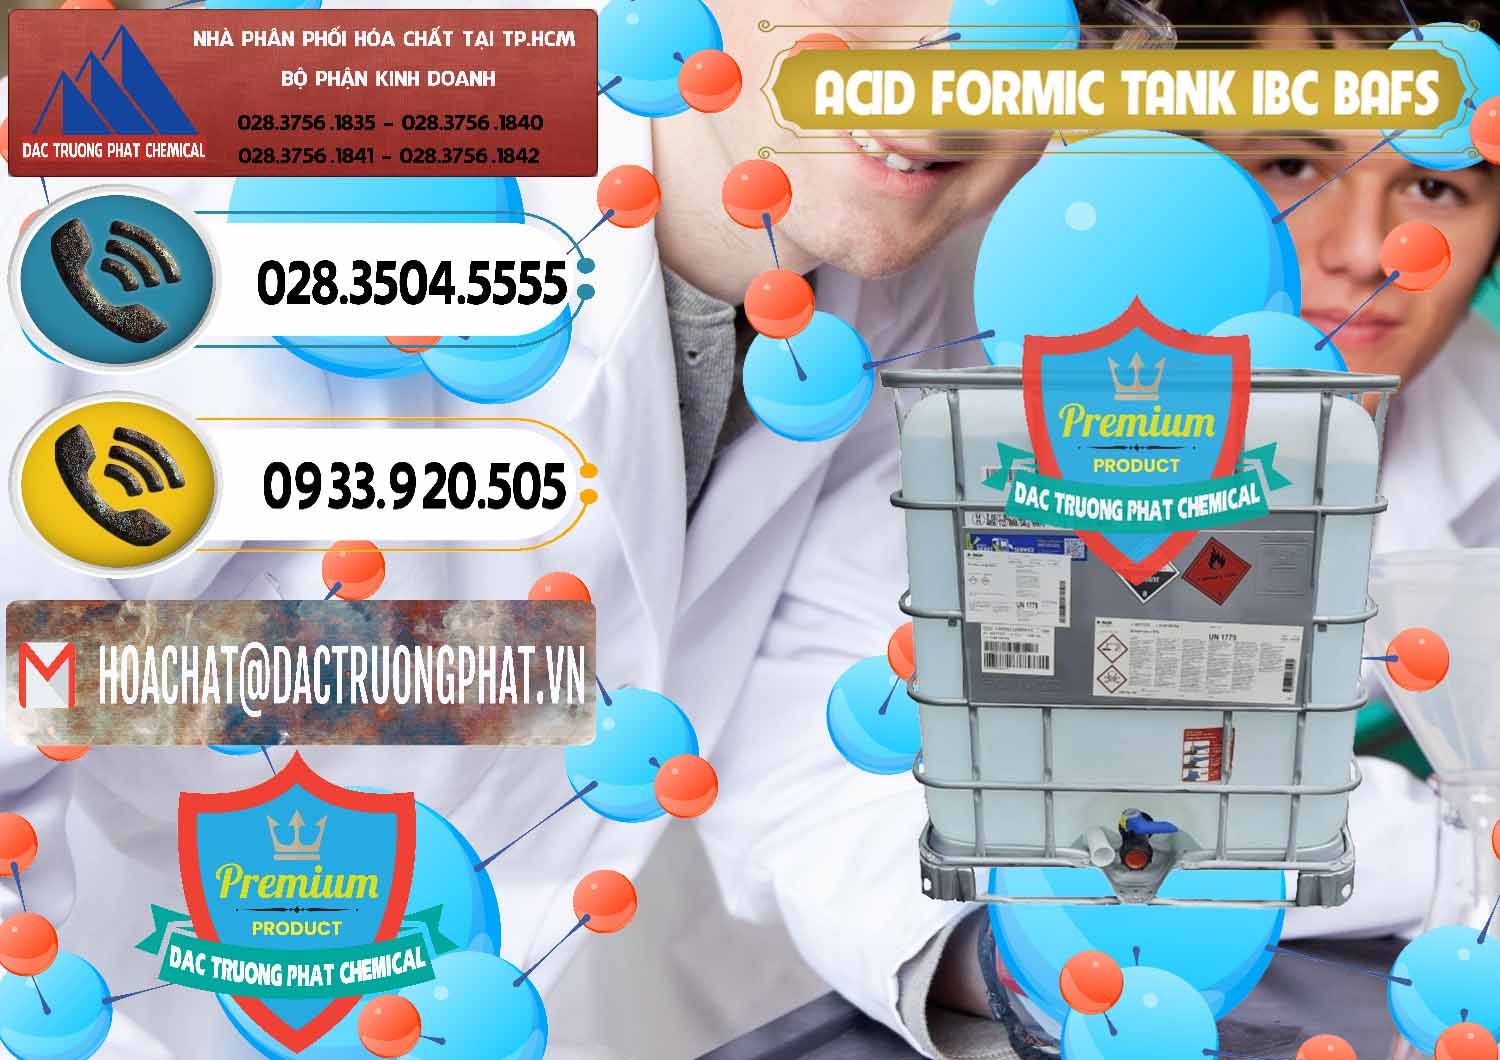 Chuyên bán _ cung cấp Acid Formic - Axit Formic Tank - Bồn IBC BASF Đức - 0366 - Phân phối ( bán ) hóa chất tại TP.HCM - hoachatdetnhuom.vn